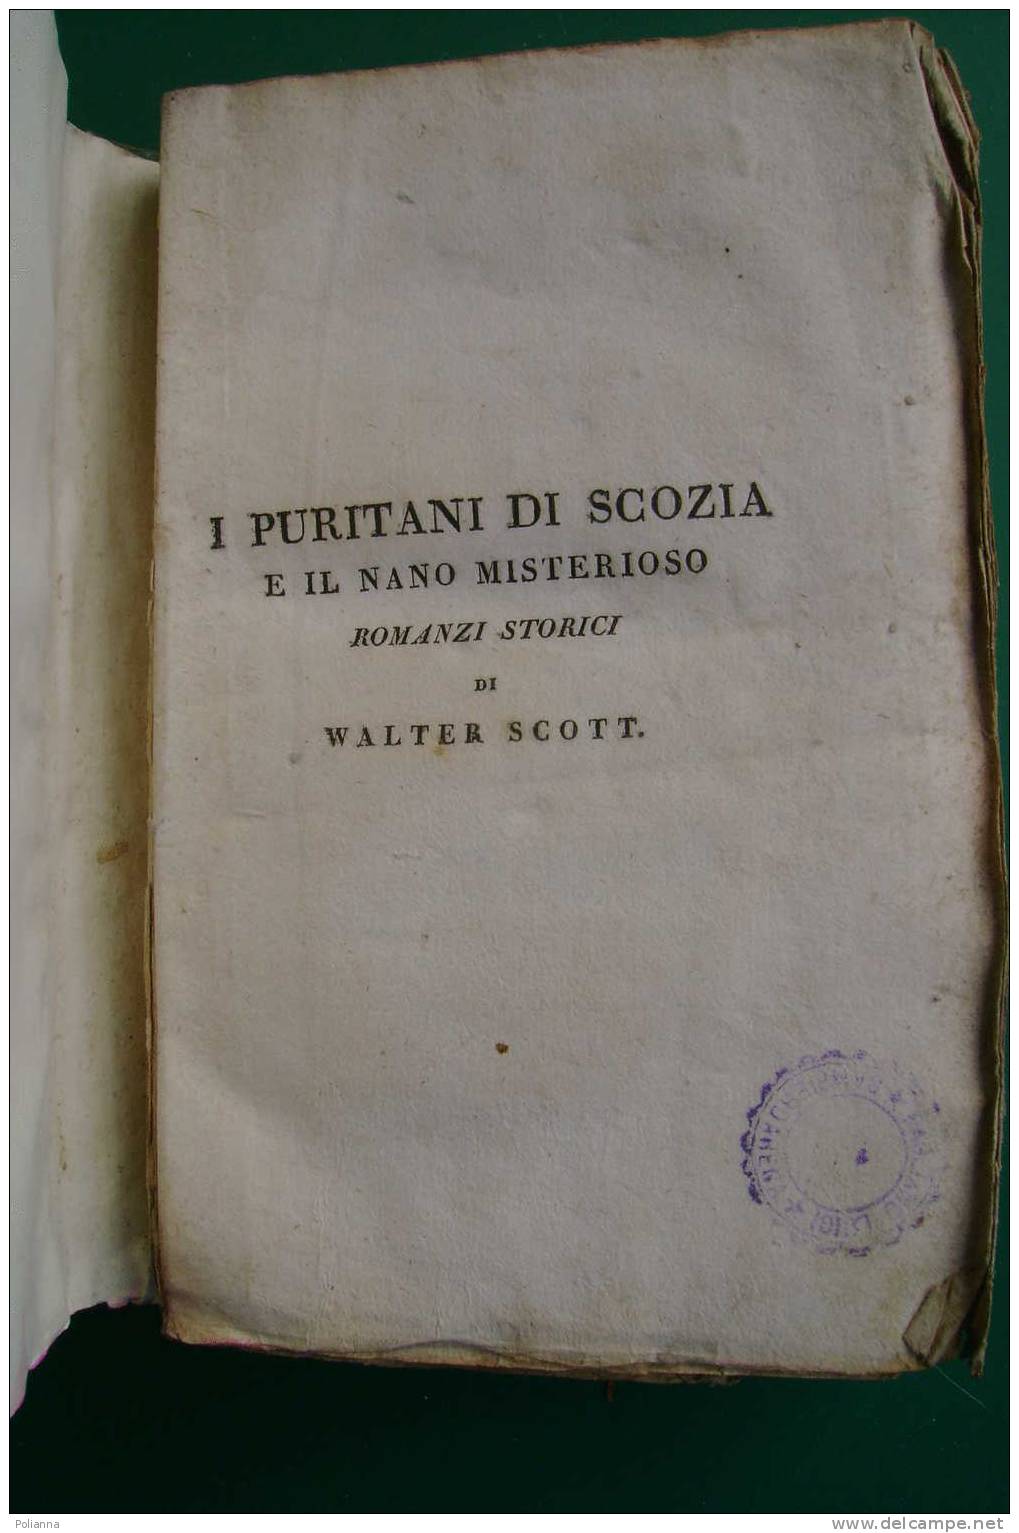 PDE/55 W.Scott I PURITANI DI SCOZIA E IL NANO MISTERIOSO Tomo III - Tipografia Di Commercio 1822 - Antichi